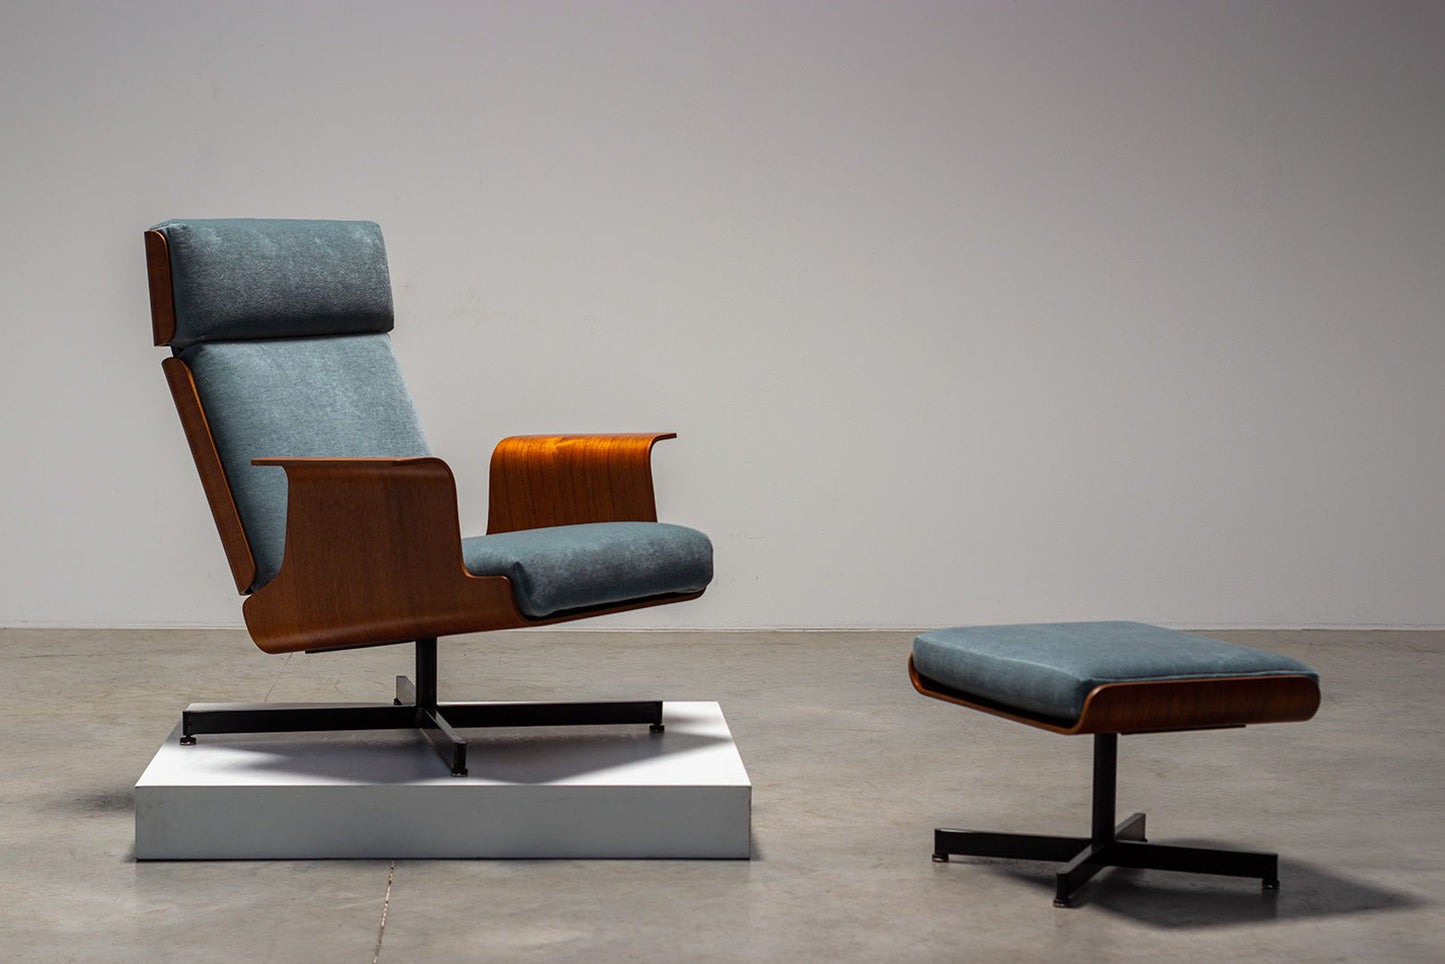 Pierre Guariche teak plywood armchair with ottoman 1960 model Helsinki